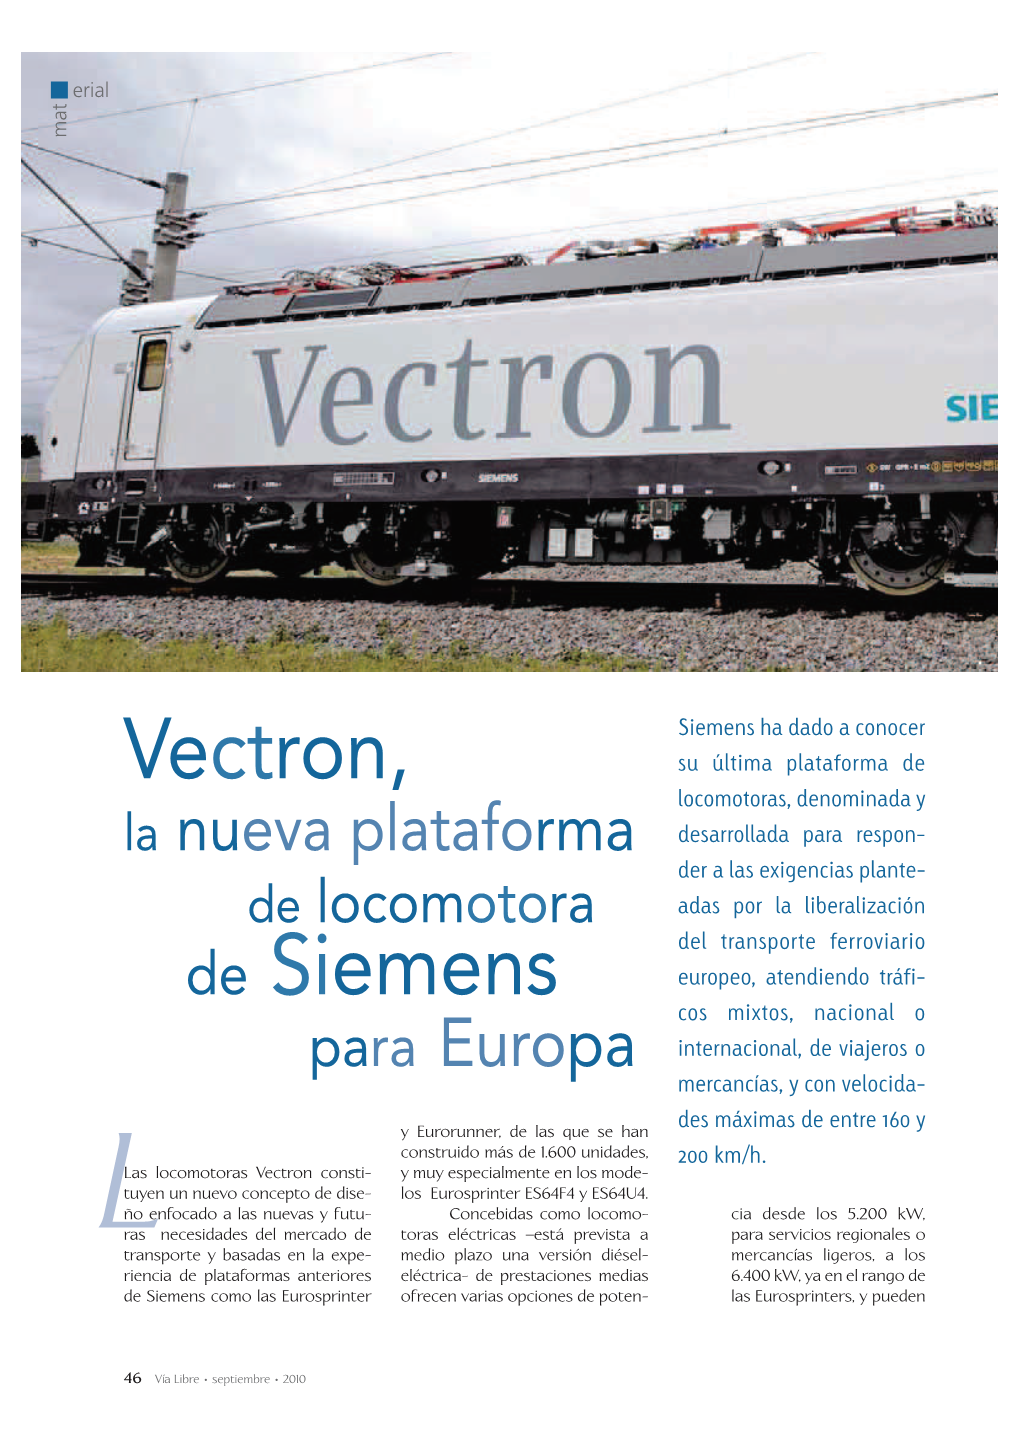 Vectron, De Siemens